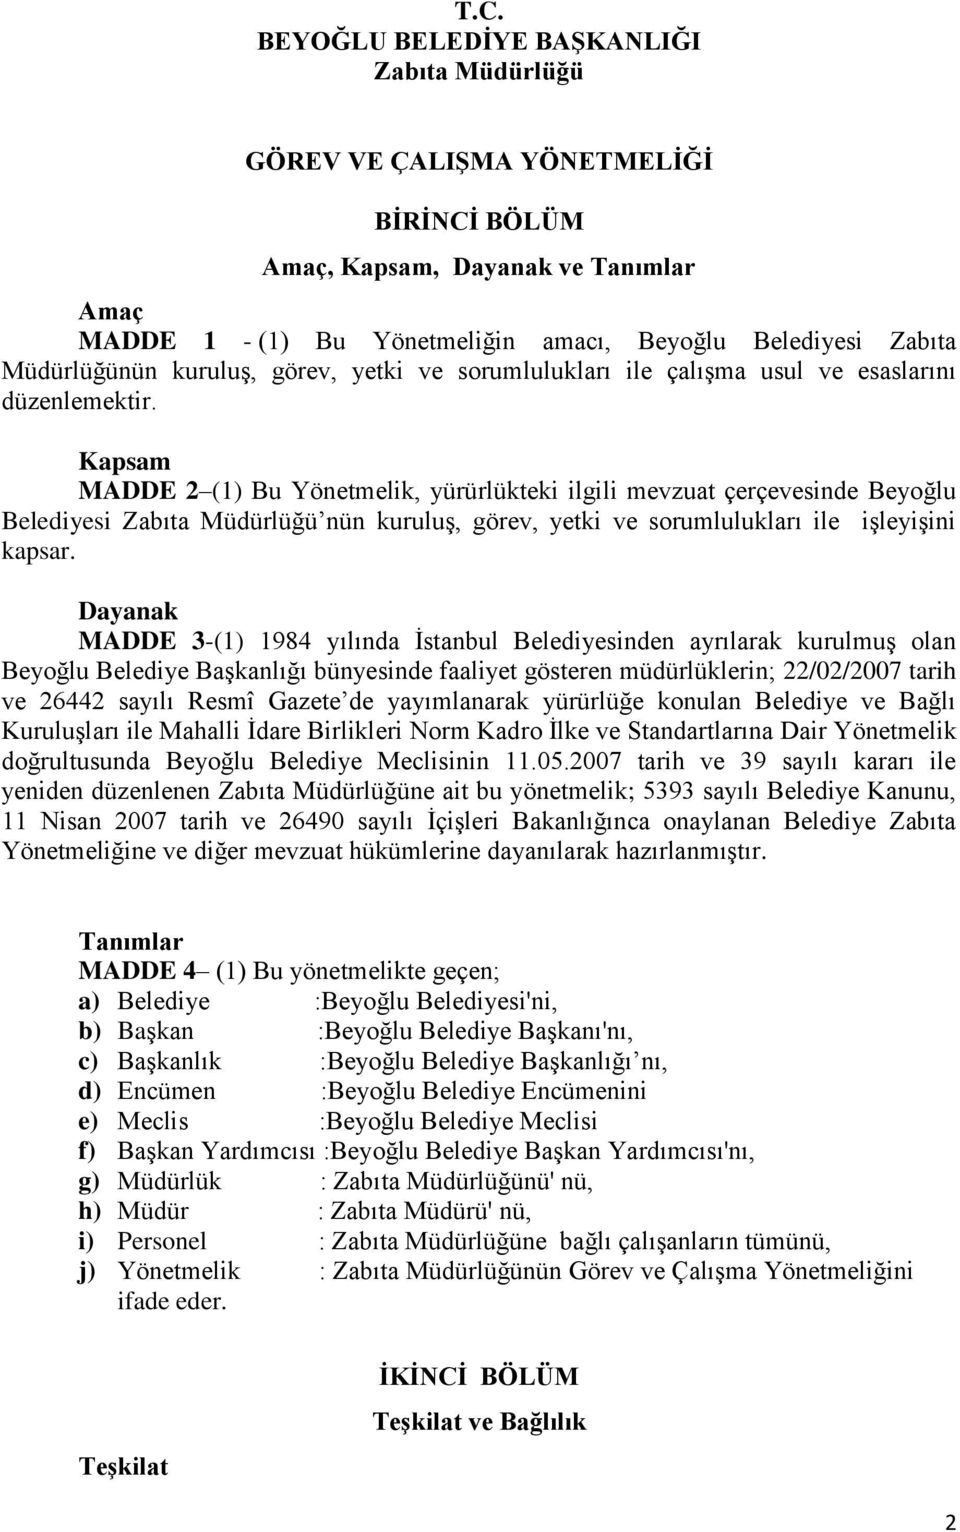 Kapsam MADDE 2 (1) Bu Yönetmelik, yürürlükteki ilgili mevzuat çerçevesinde Beyoğlu Belediyesi Zabıta Müdürlüğü nün kuruluş, görev, yetki ve sorumlulukları ile işleyişini kapsar.